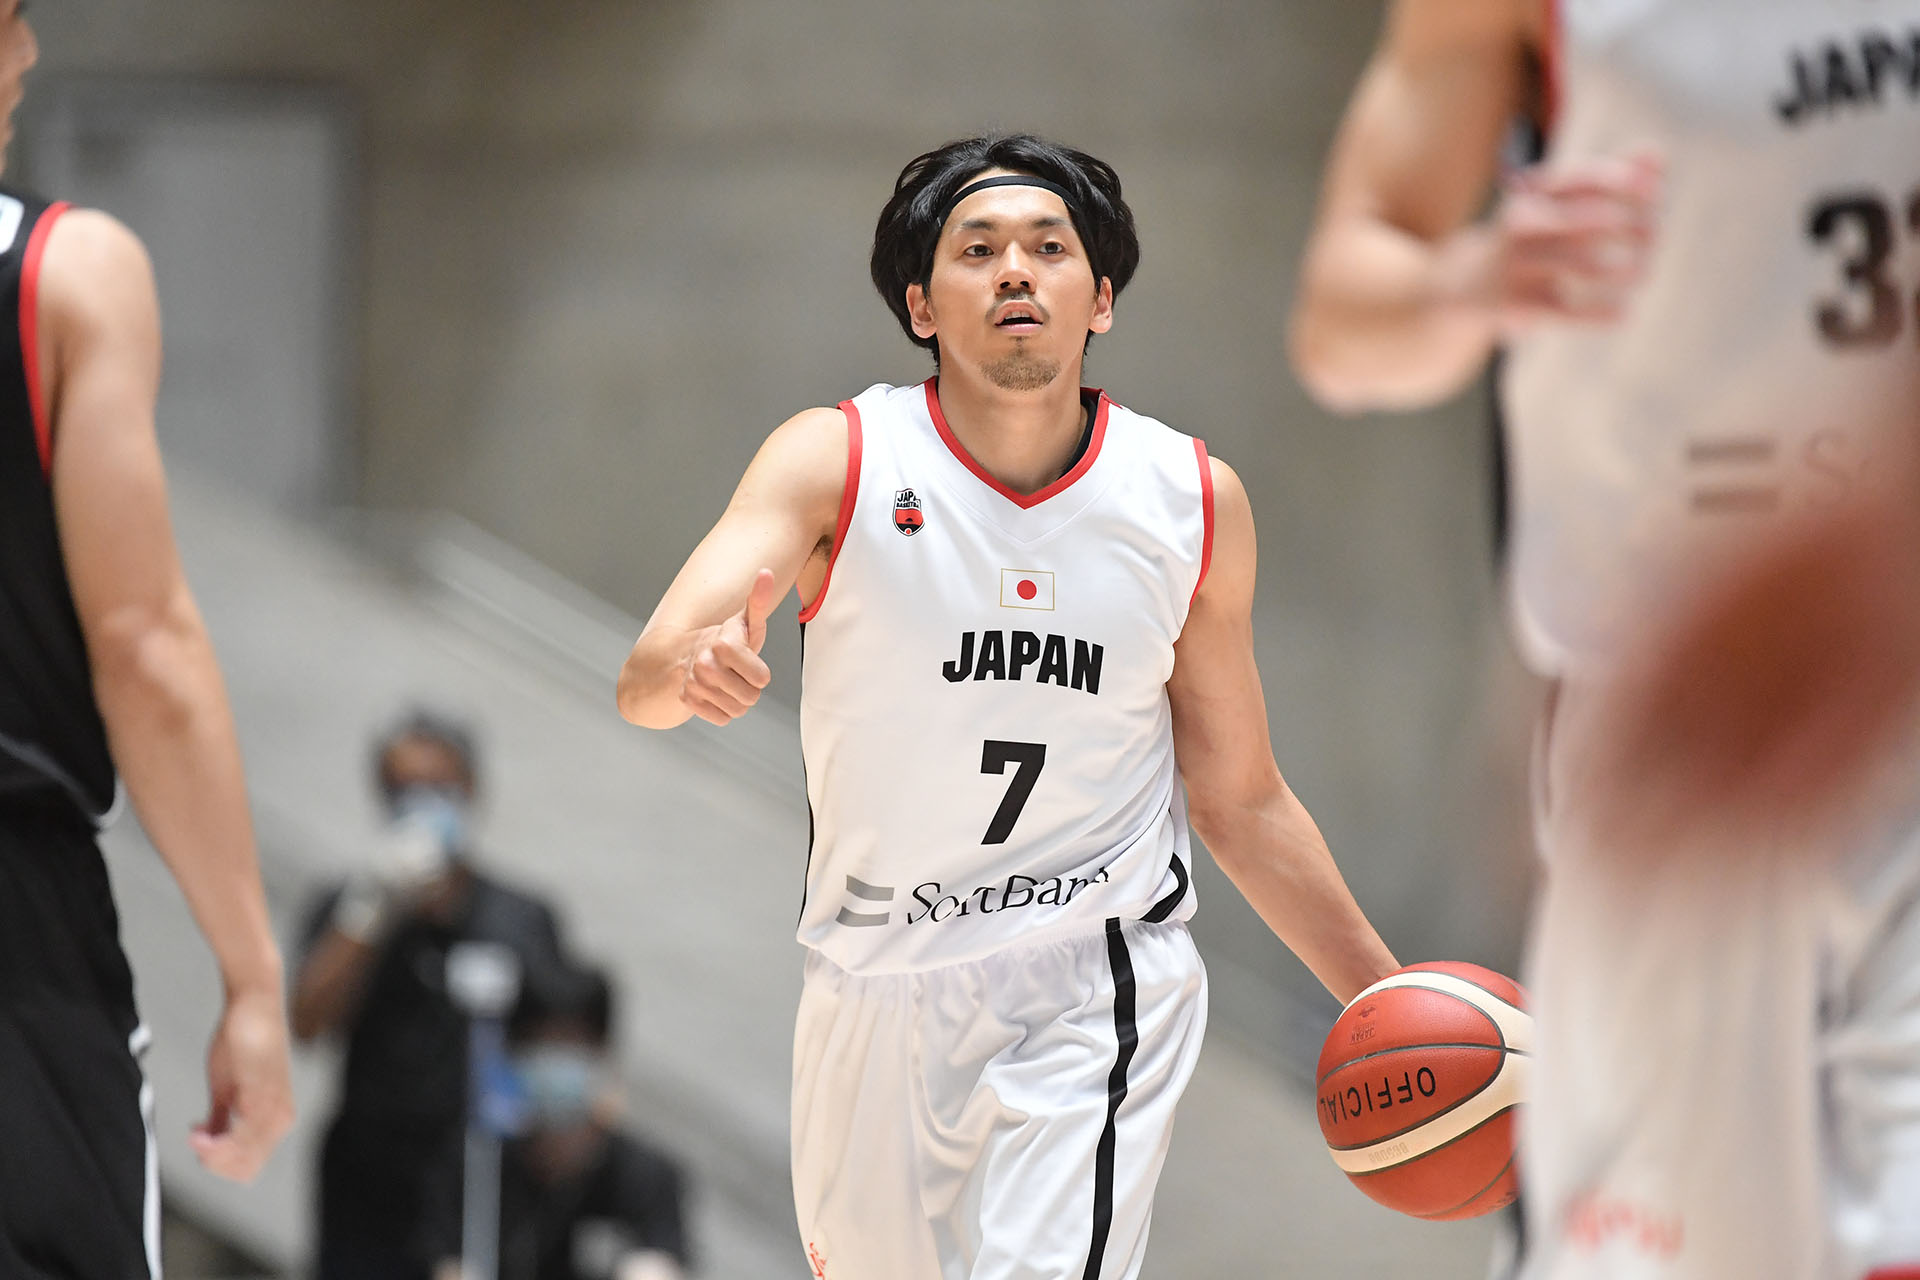 日本のバスケットボールが再始動 コロナ禍から転じた 福 とこれからへ Fly Basketball Culture Magazine バスケットボール ファッション カルチャー マガジン